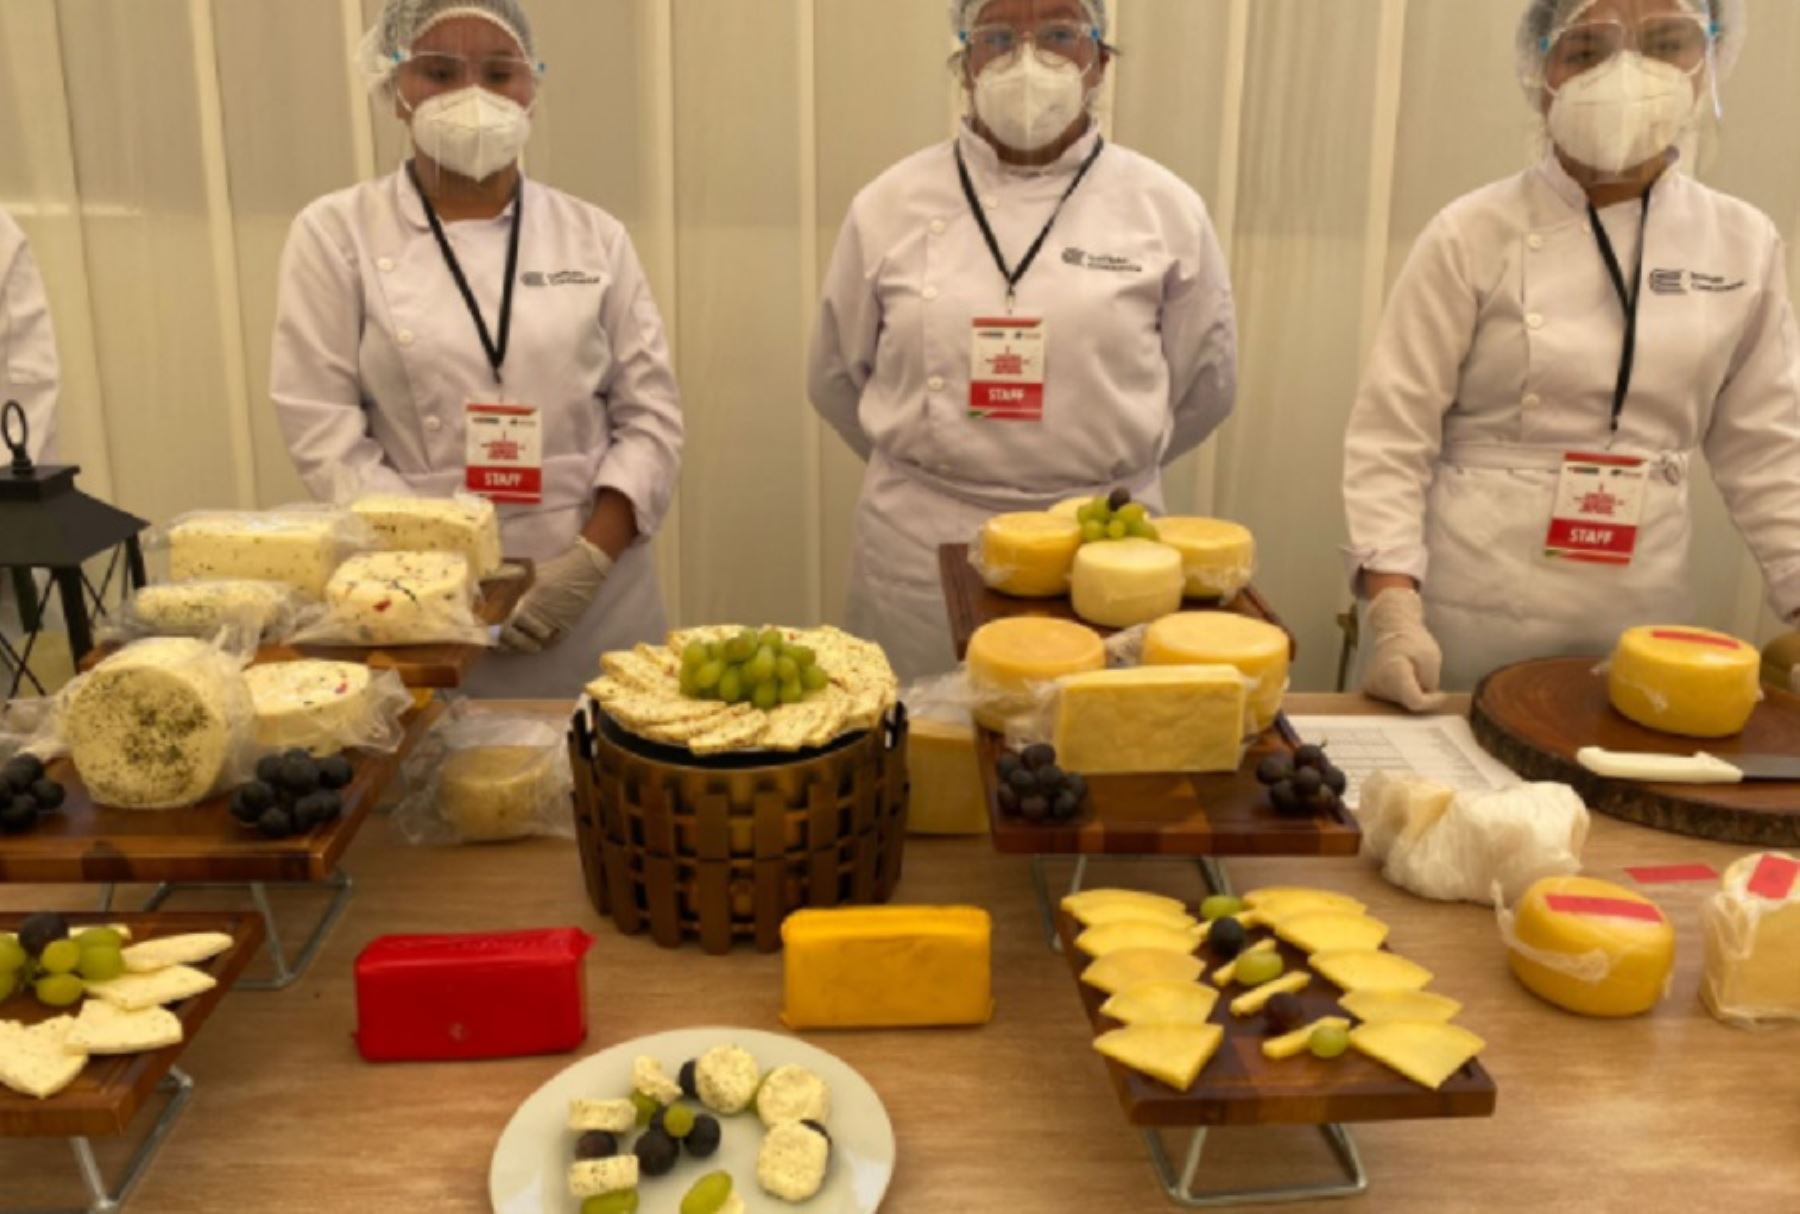 Los productores de quesos de Ayacucho, Pasco y Junín lograron la victoria en las principales categorías del “Primer Concurso Macrorregional de Quesos - zona Centro”, organizado por el Ministerio de Desarrollo Agrario y Riego.